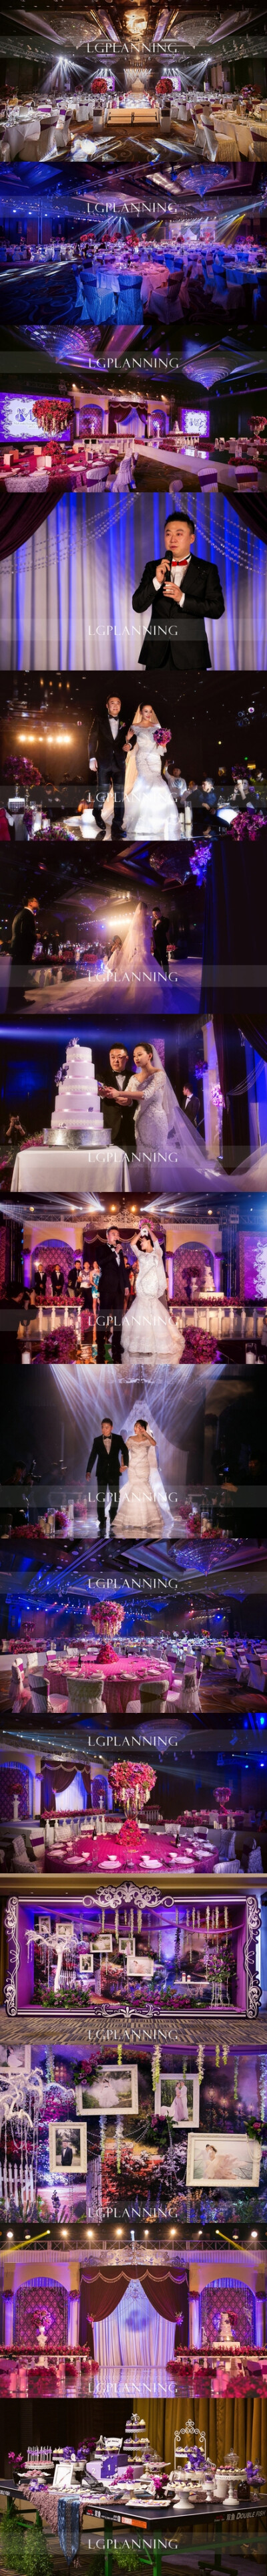 #真实婚礼#奥运冠军马琳“心的誓约”主题婚礼，婚礼以紫为主色，让婚礼现场充满绚烂的情怀与浓浓的爱意。 更多: http://www.lovewith.me/share/detail/all/30876